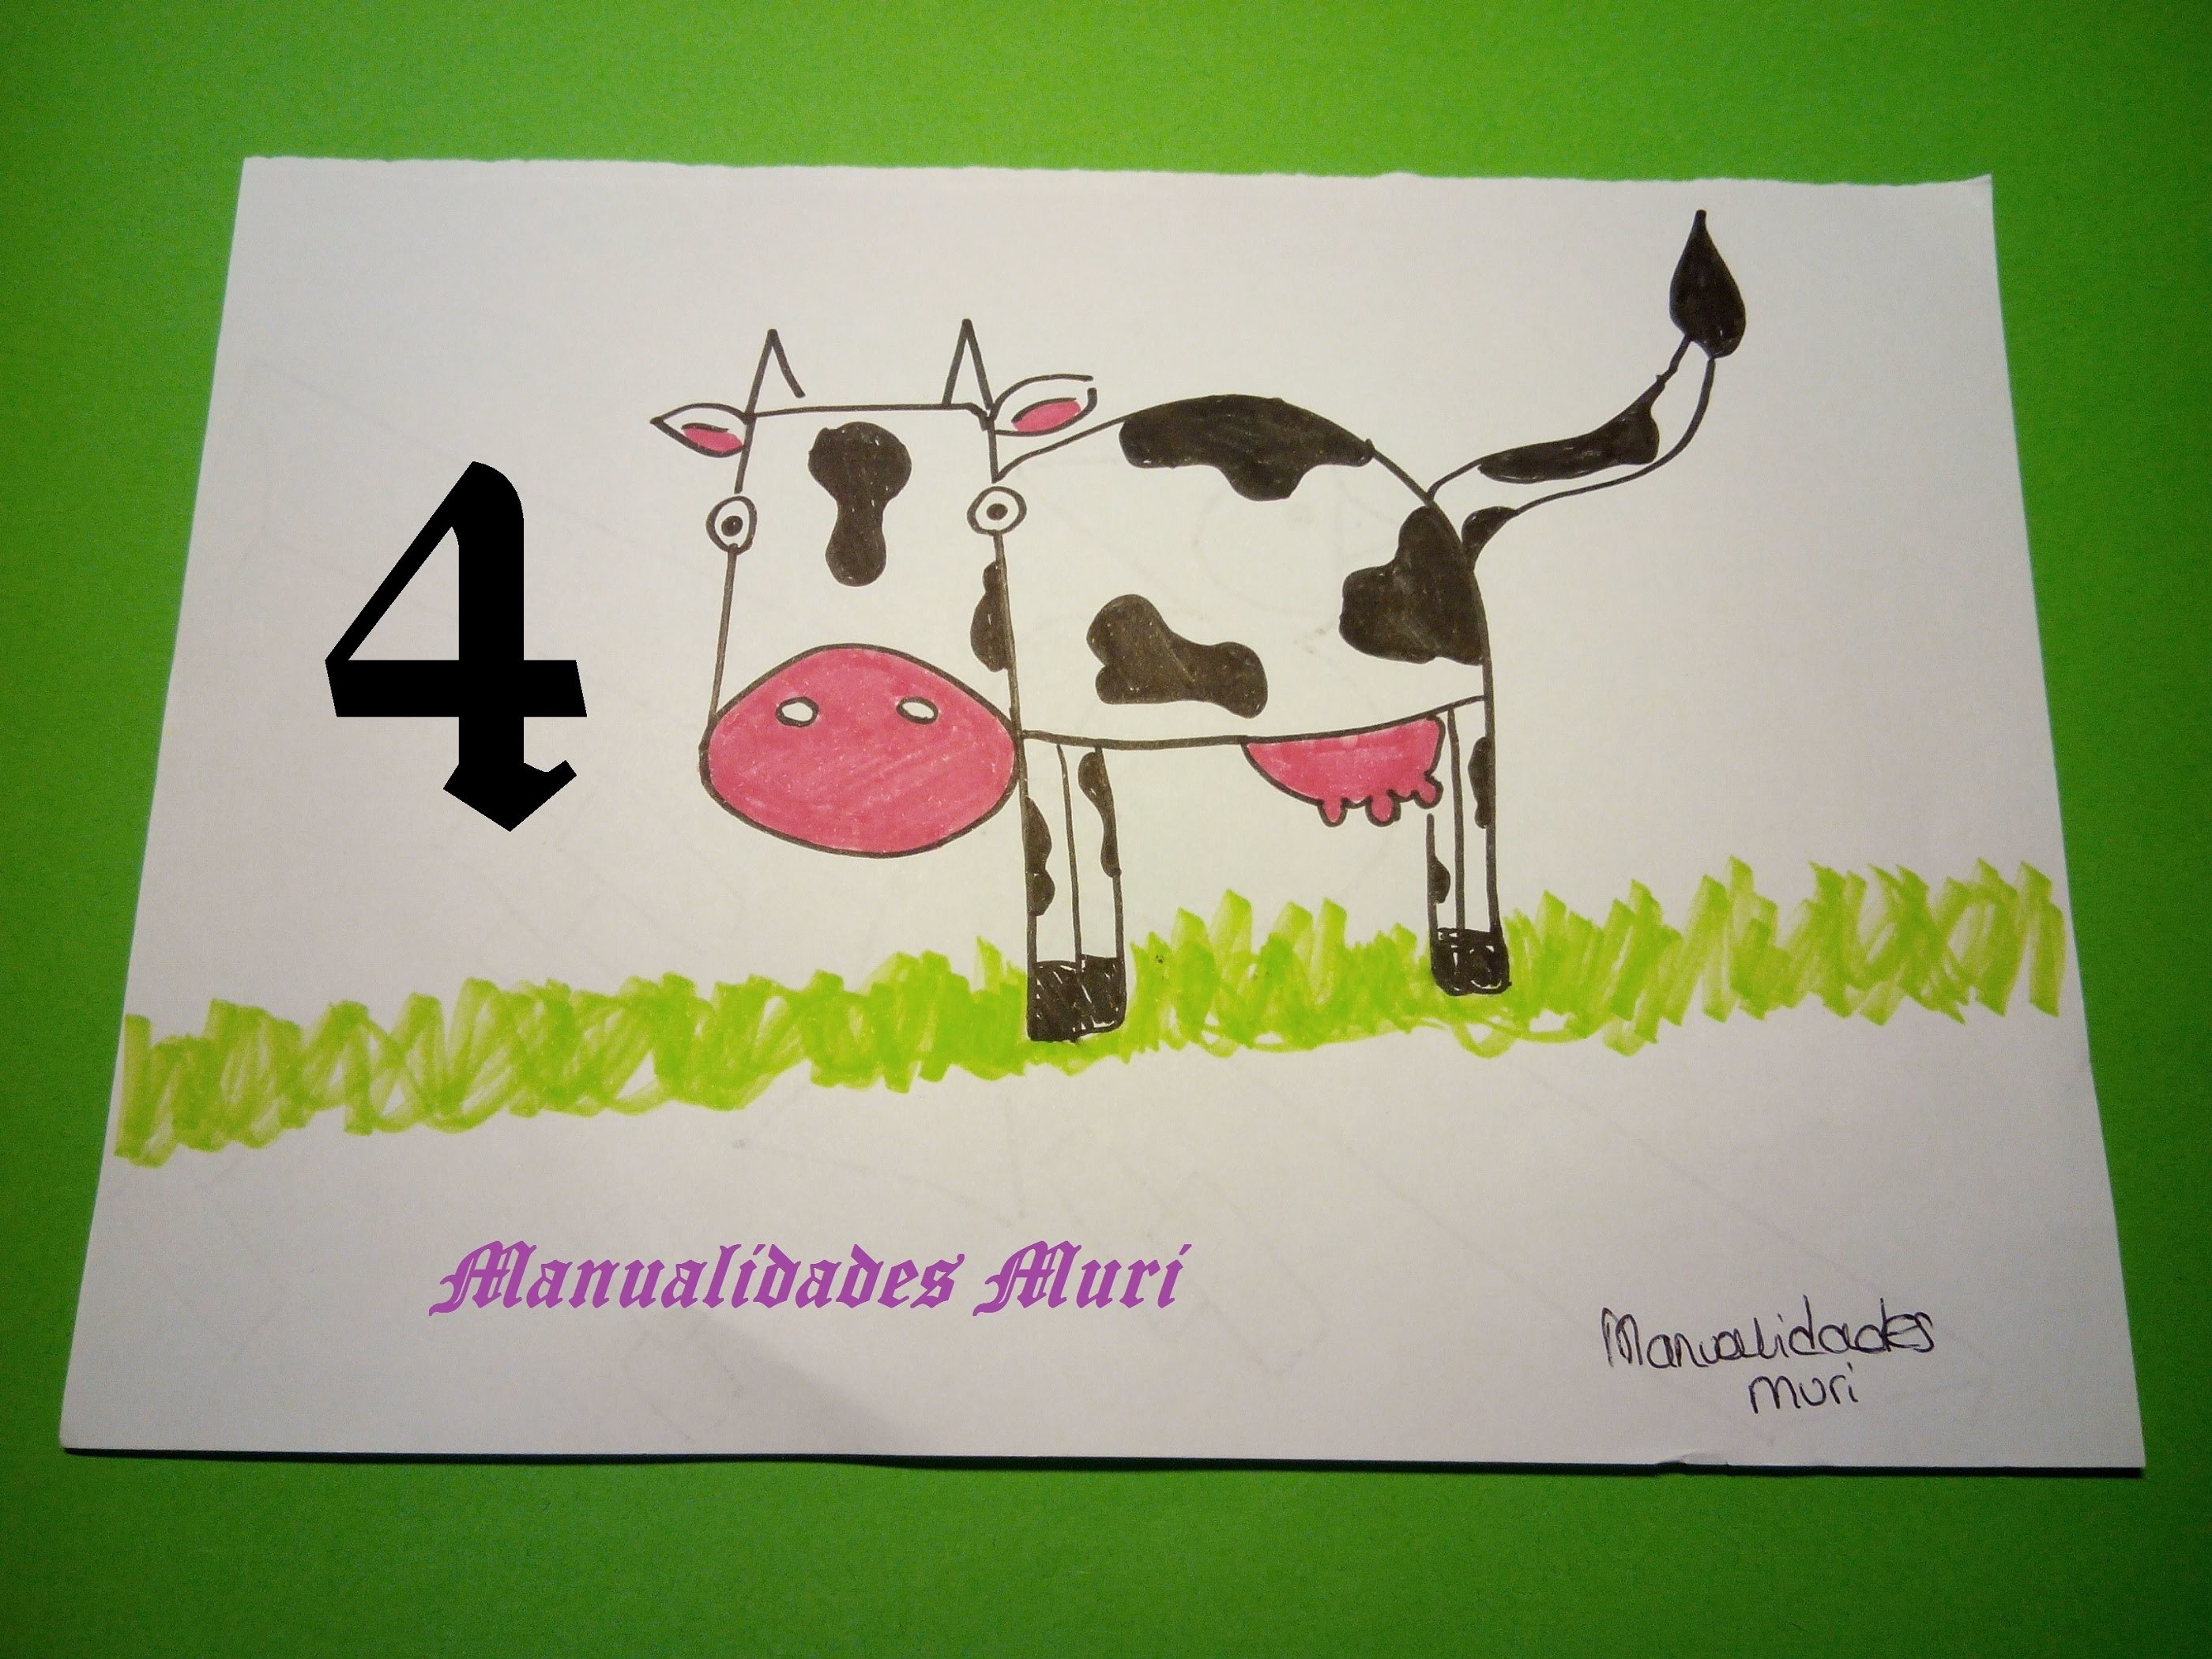 Manualidades. Aprende a dibujar con números: Vaca con el 4